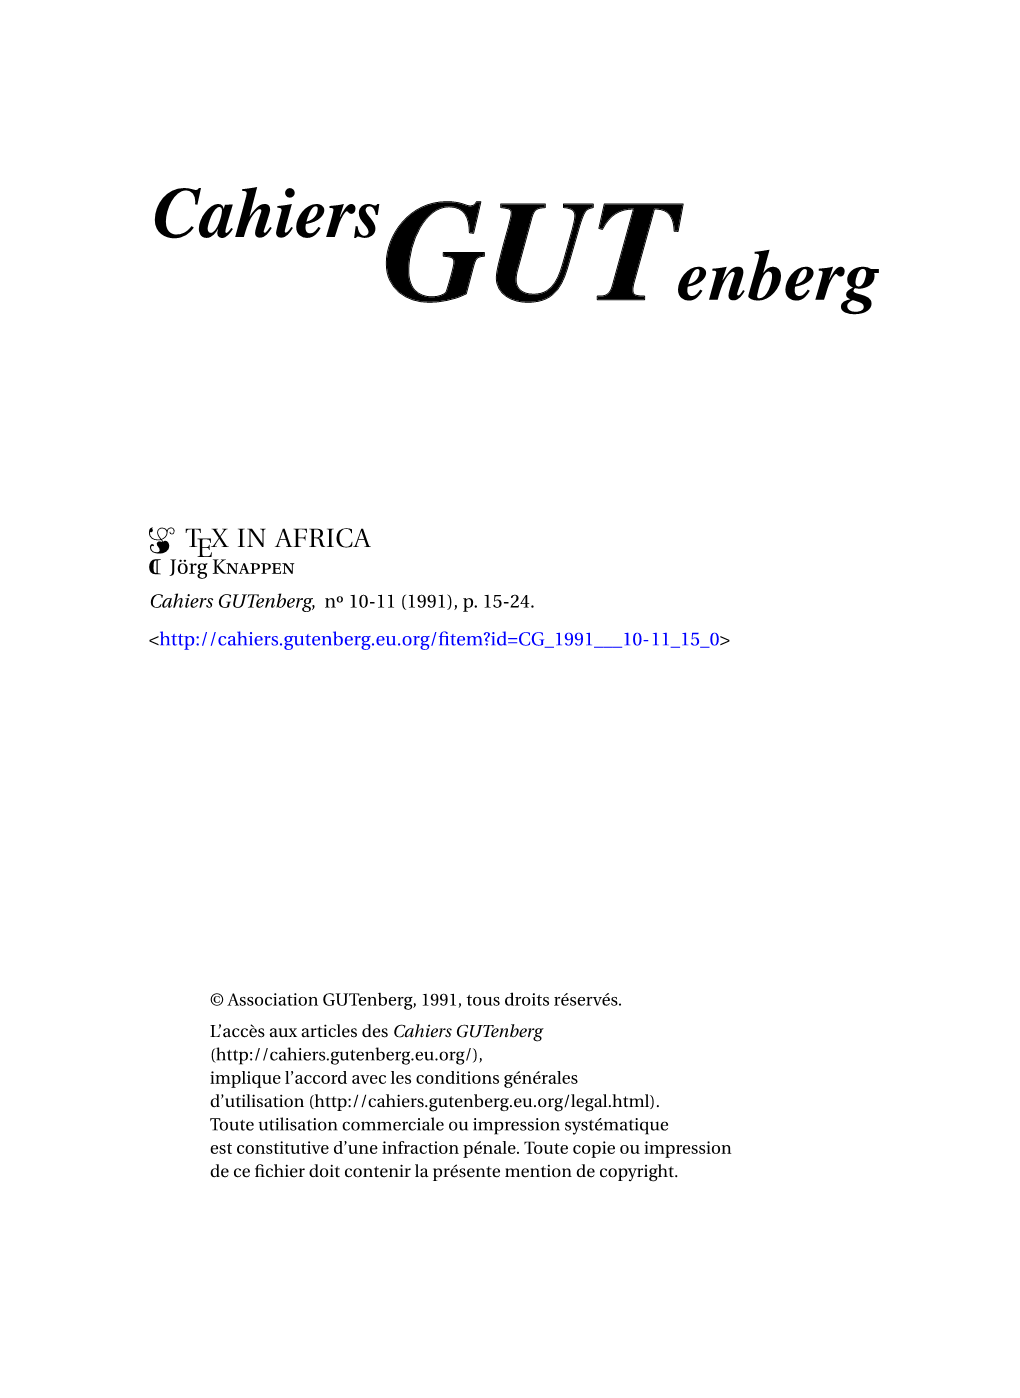 TEX in AFRICA P Jörg Knappen Cahiers Gutenberg, N 10-11 (1991), P